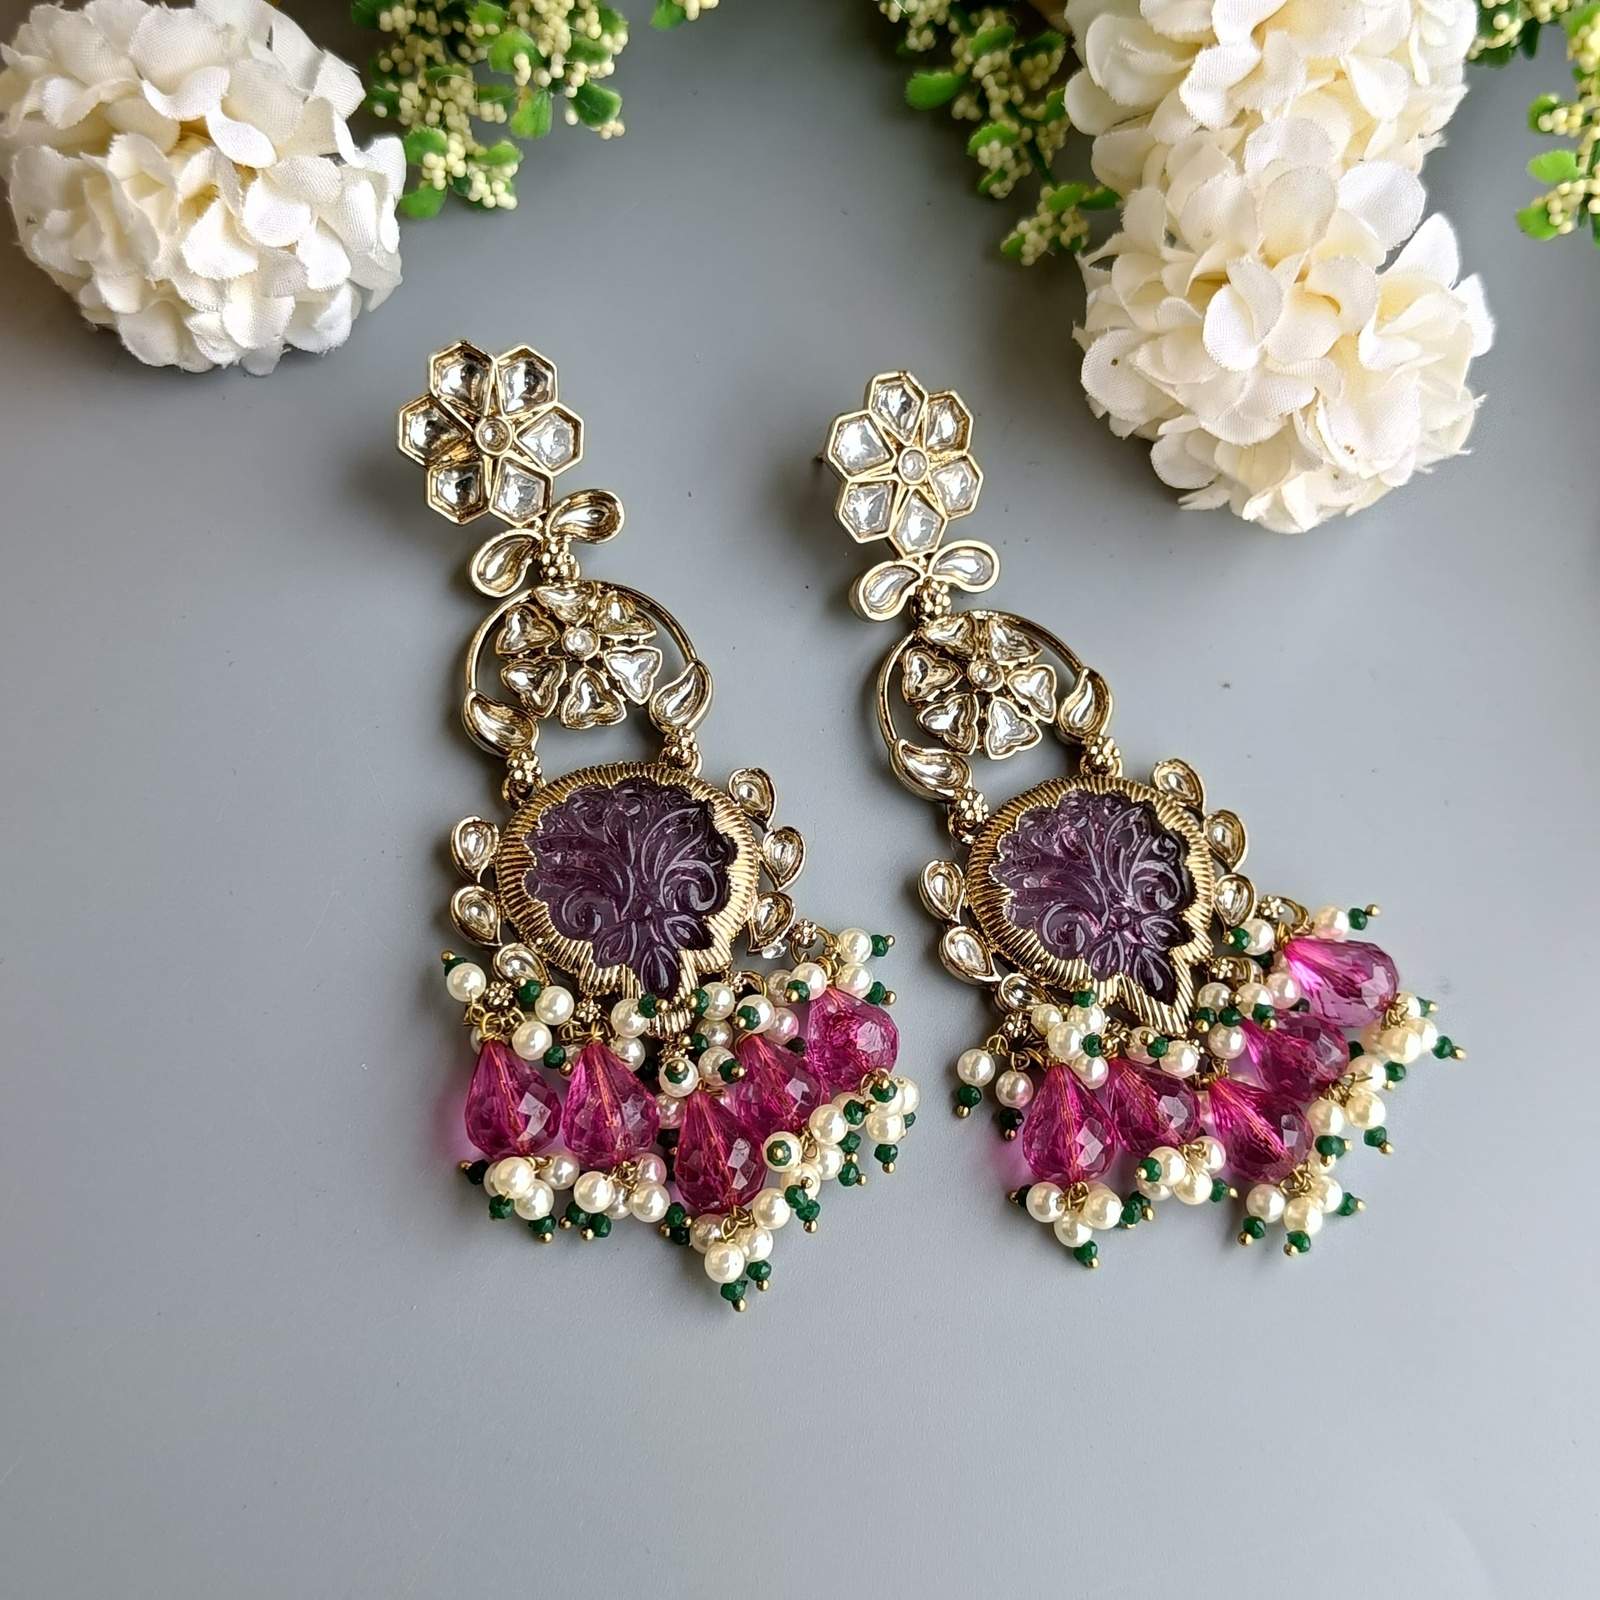 Nayaab Masha earrings